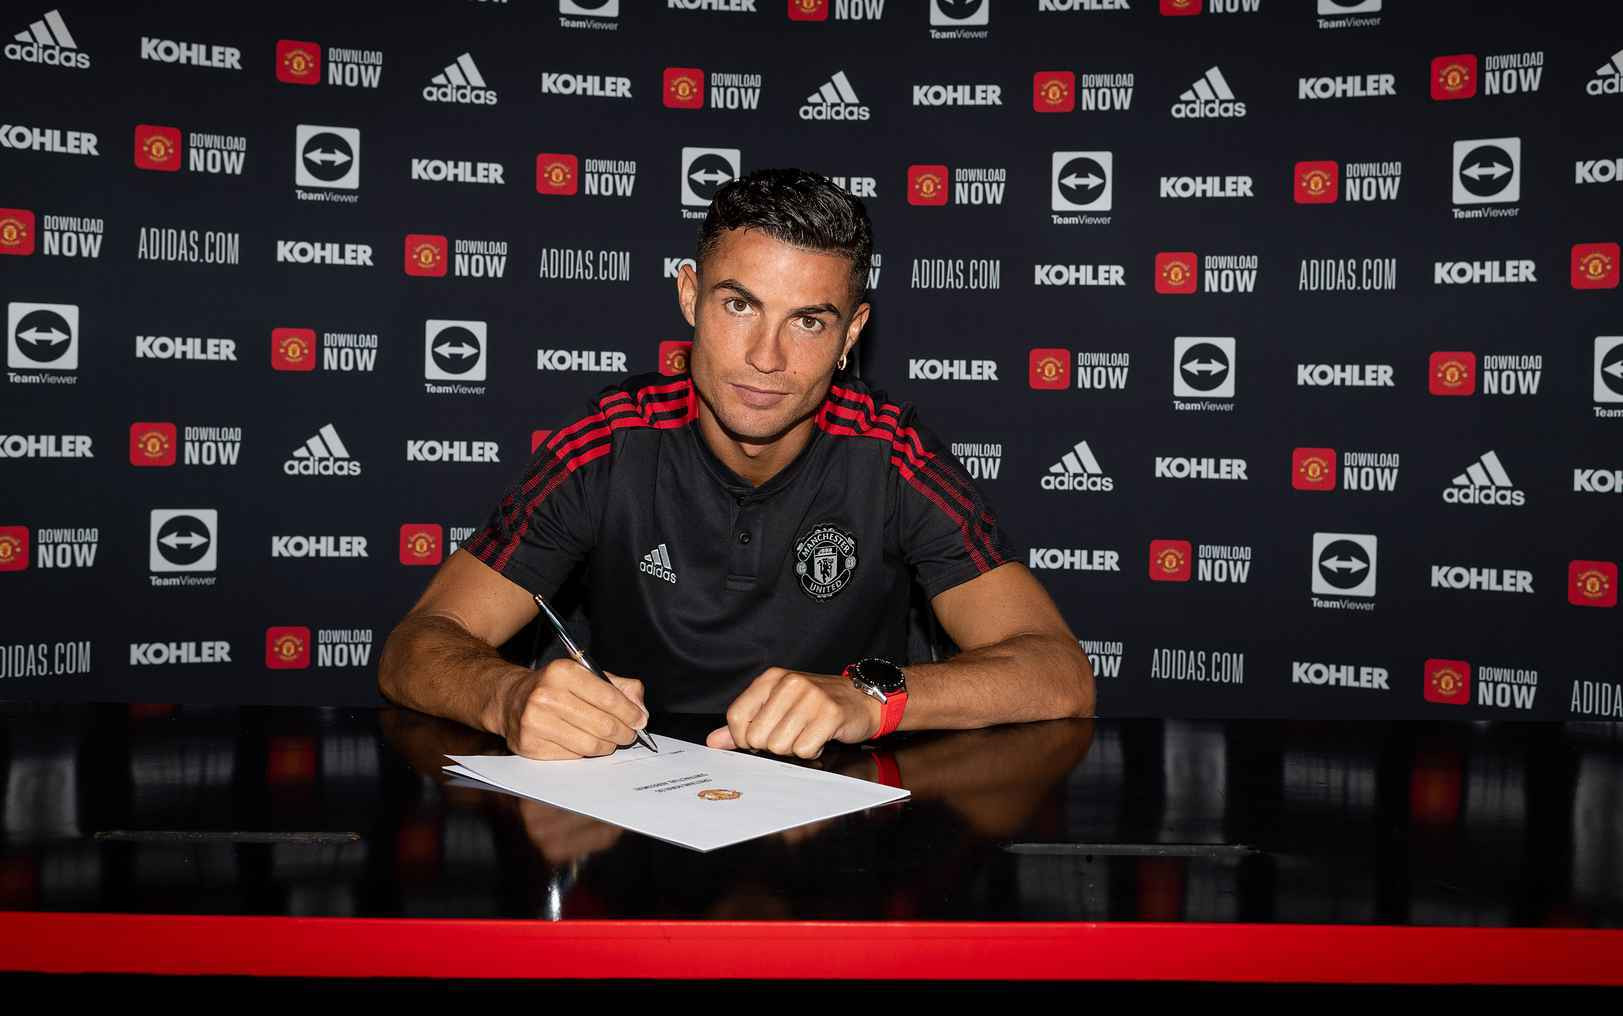 Siêu sao người Bồ Đào Nha vừa chính thức đặt bút ký hợp đồng với Man United